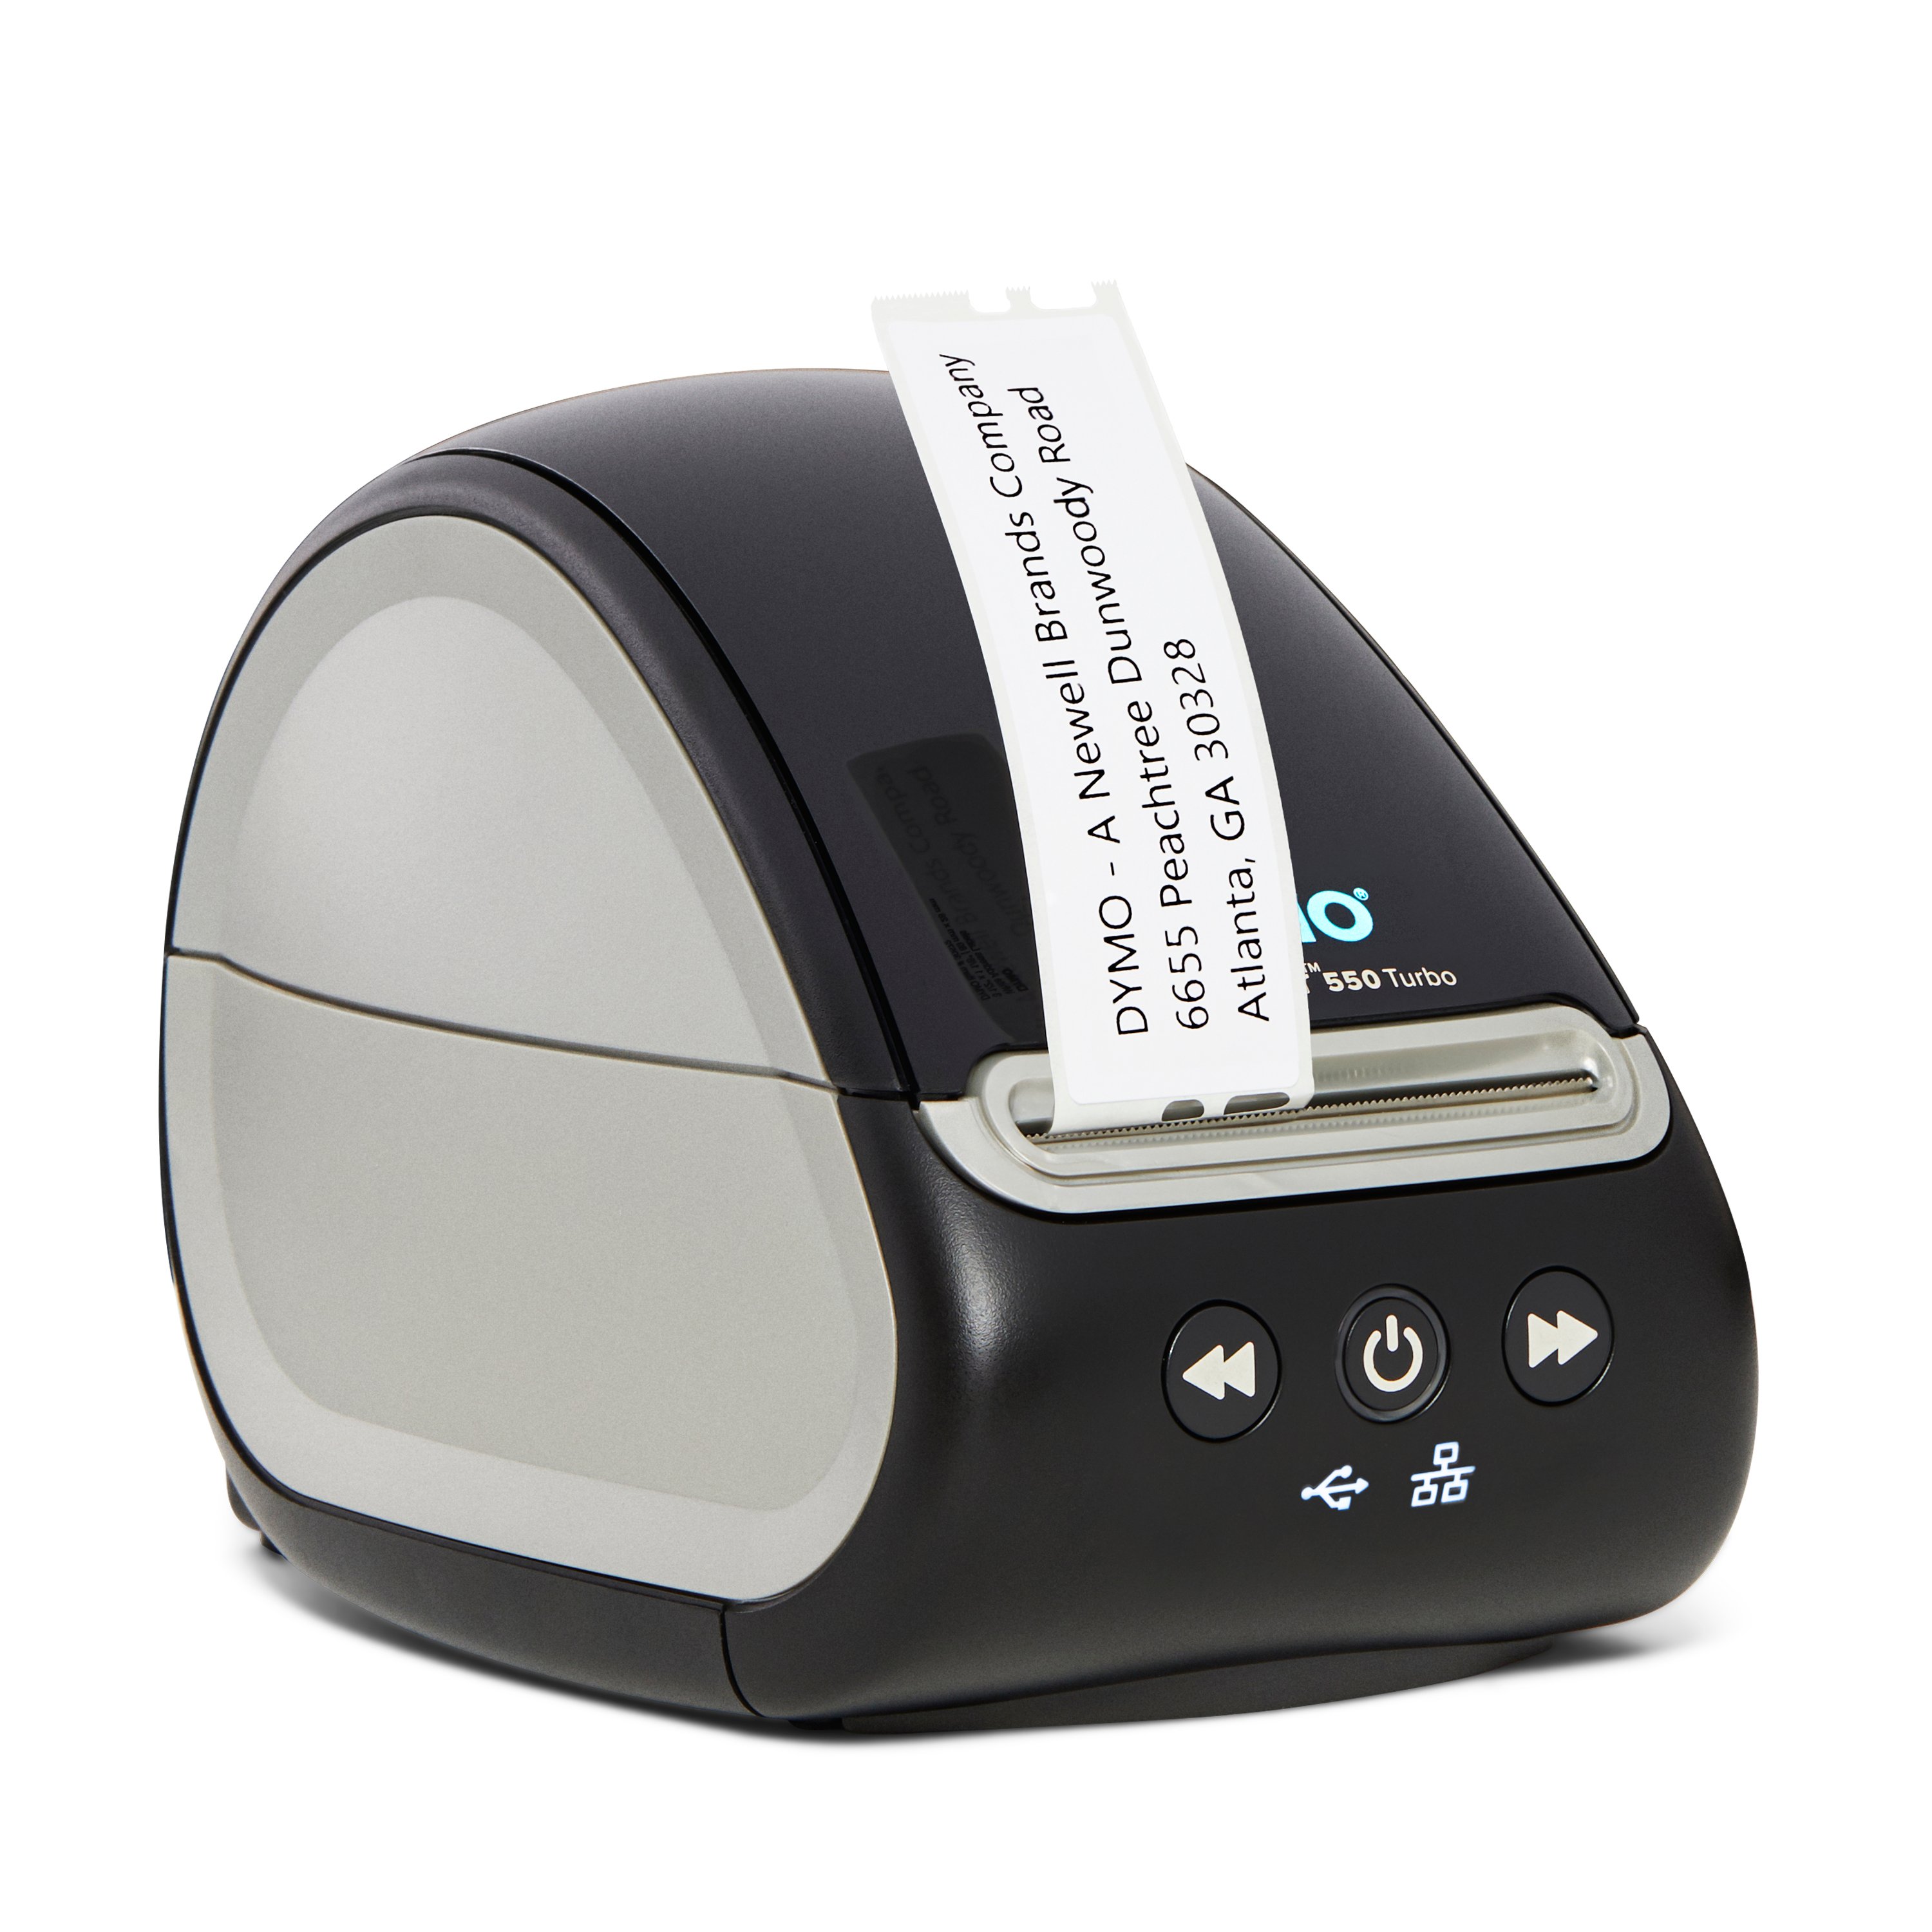 EU-Stecker DYMO Etikettendrucker LabelWriter 550 Turbo automatische Etikettenerkennung druckt Versandetiketten und mehr Etikettendrucker mit Hochgeschwindigkeits-Thermodirektdruck